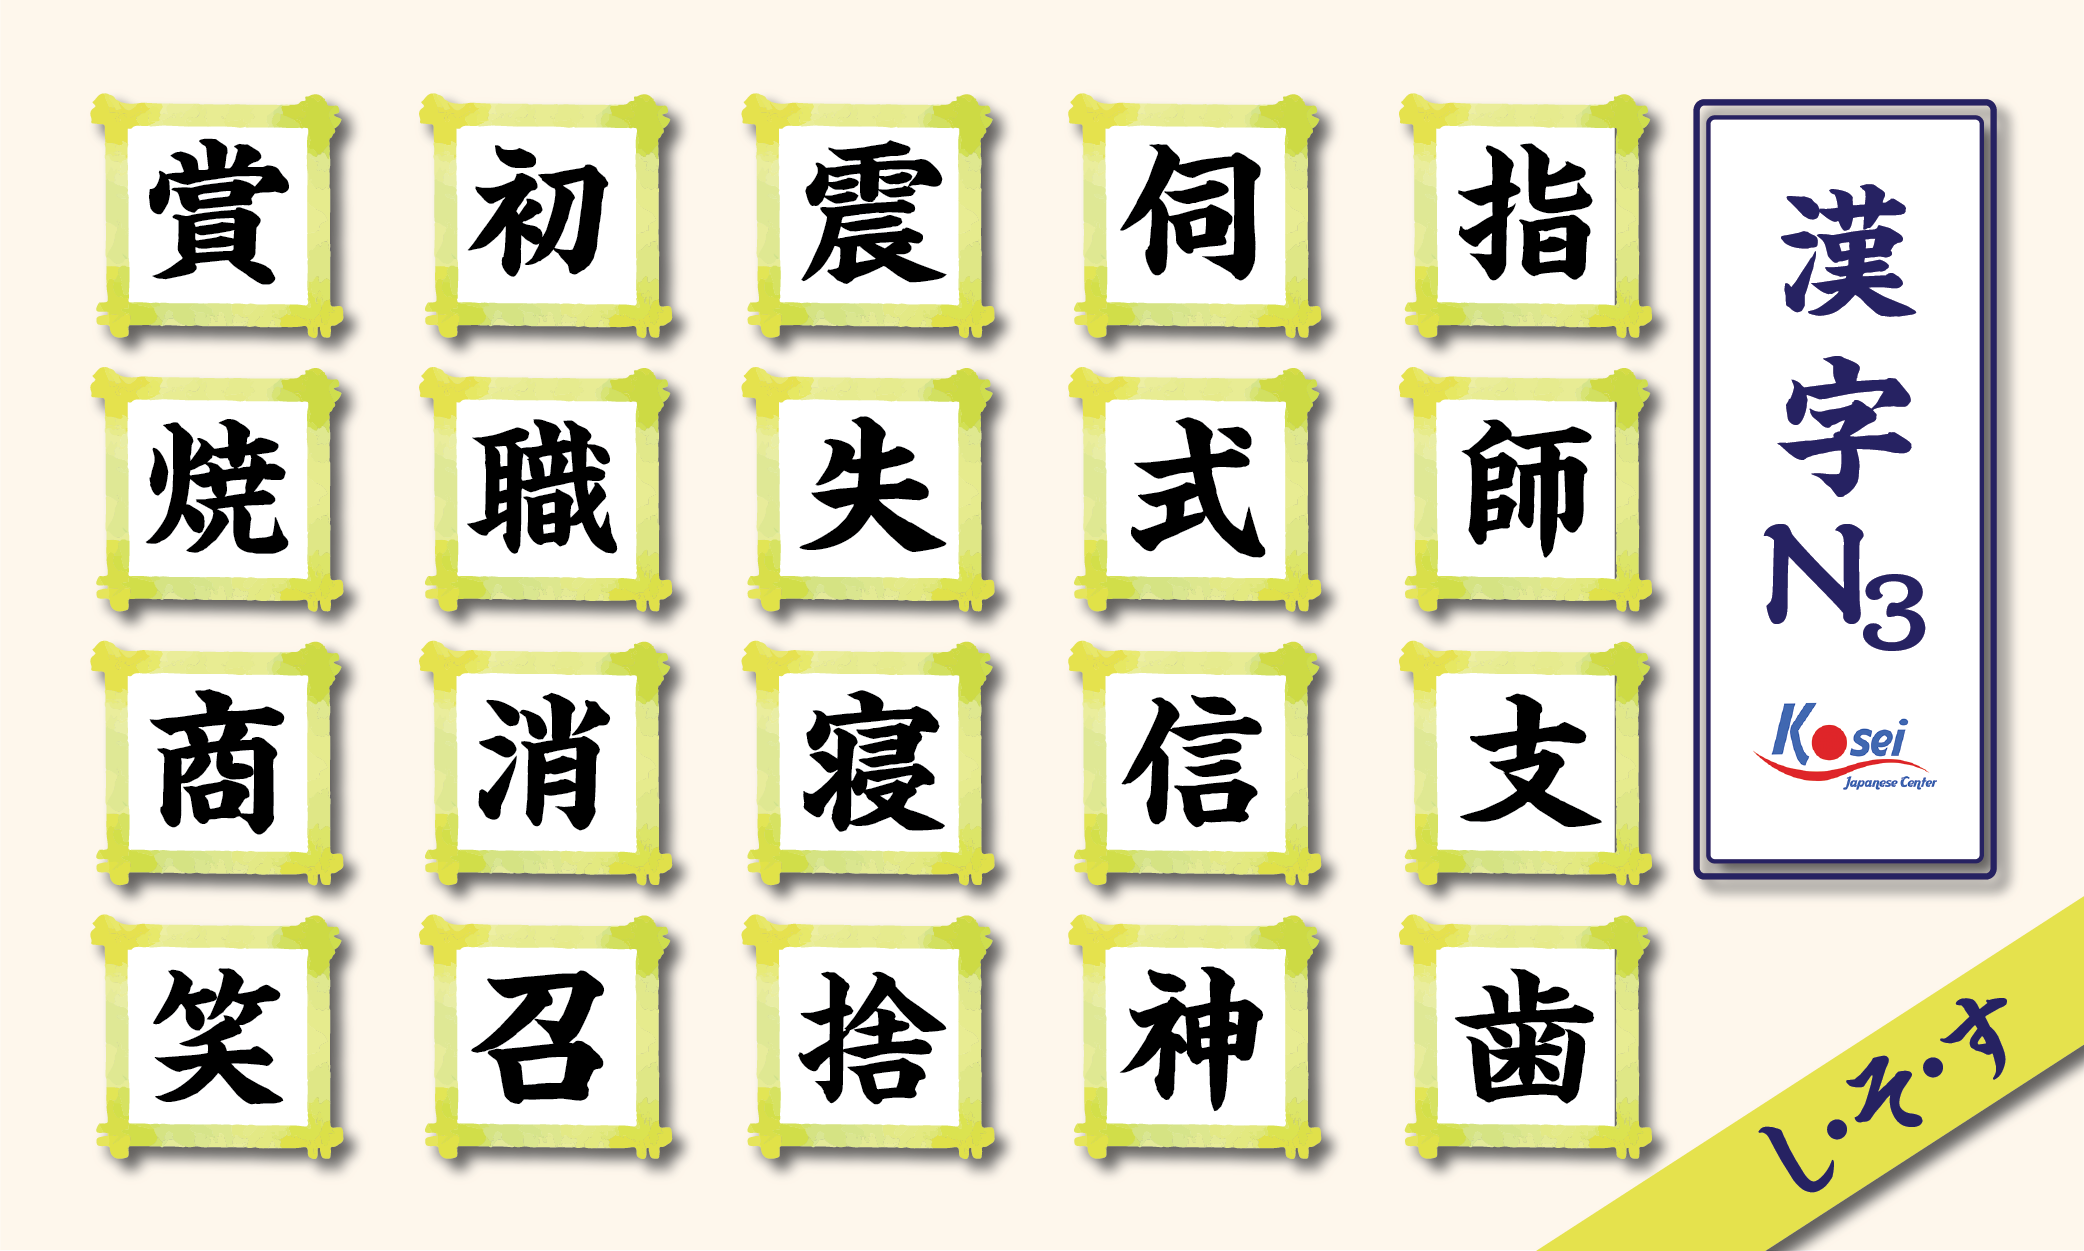 kanji n3 theo âm on hàng s